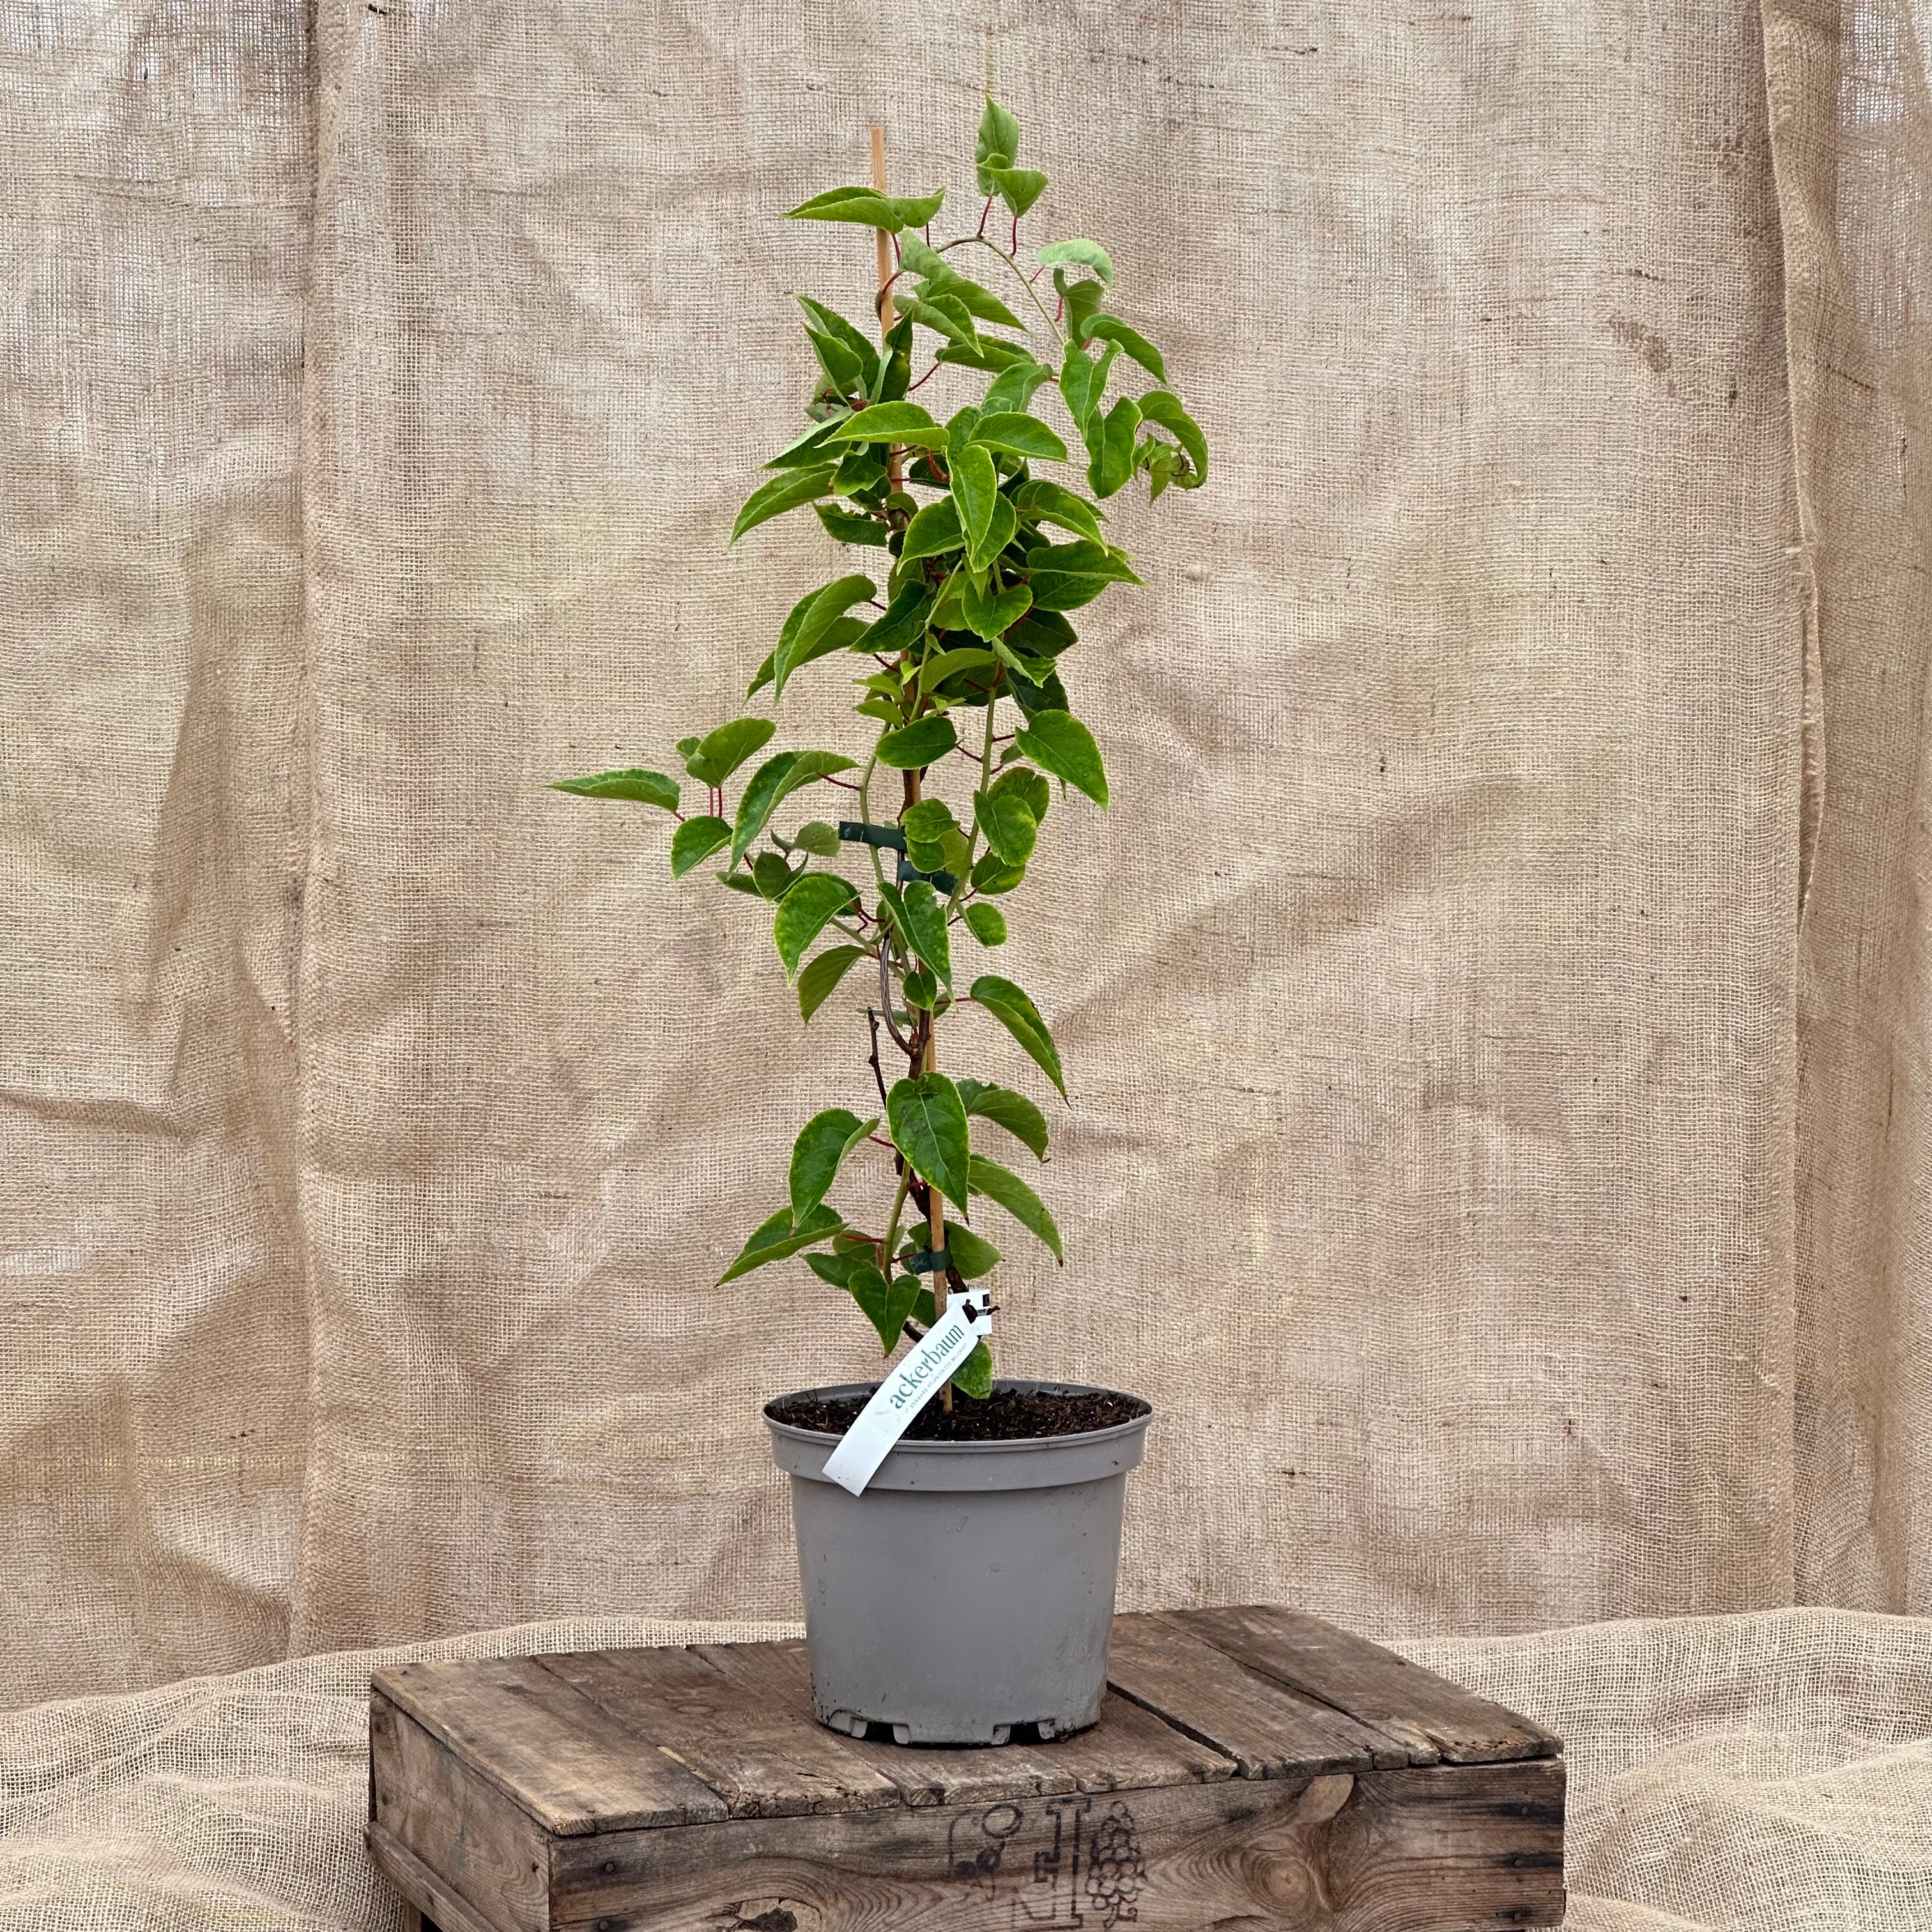 ackerbaum Kiwibeerenpflanze - Kens Red kaufen